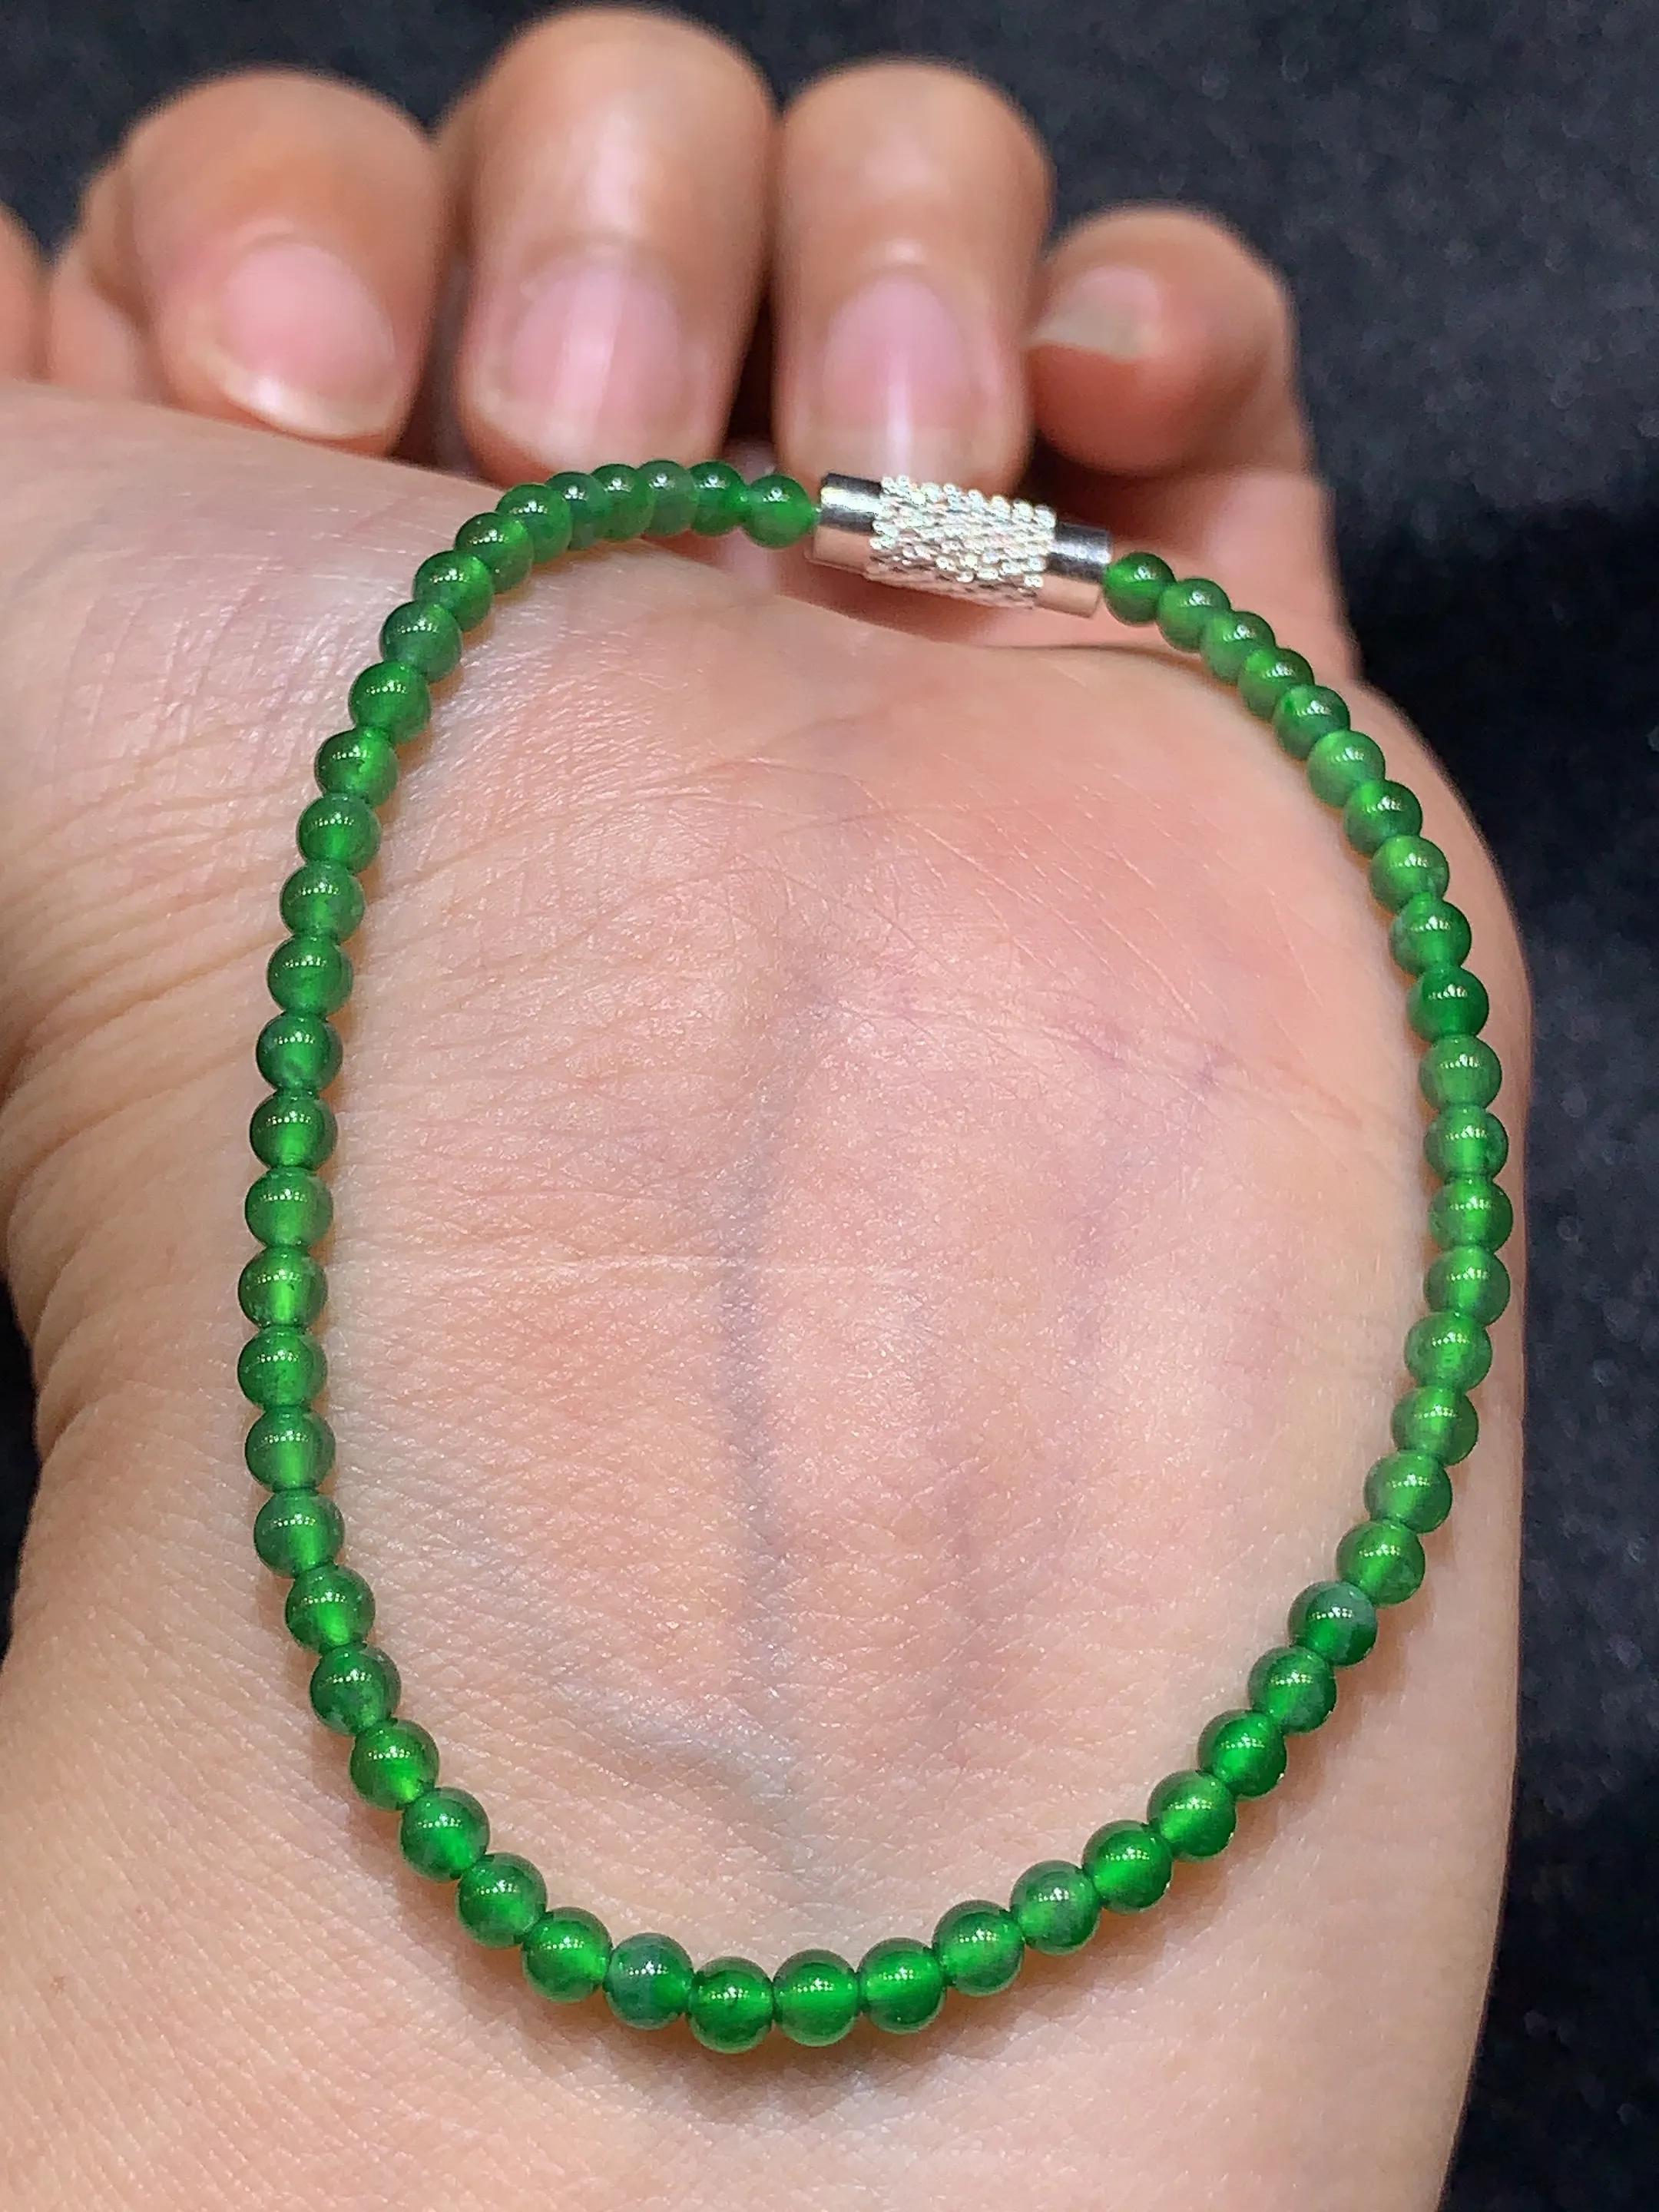 满绿圆珠手链 玉质细腻   色泽艳丽 圆润饱满 款式新颖时尚精美 取一尺寸3